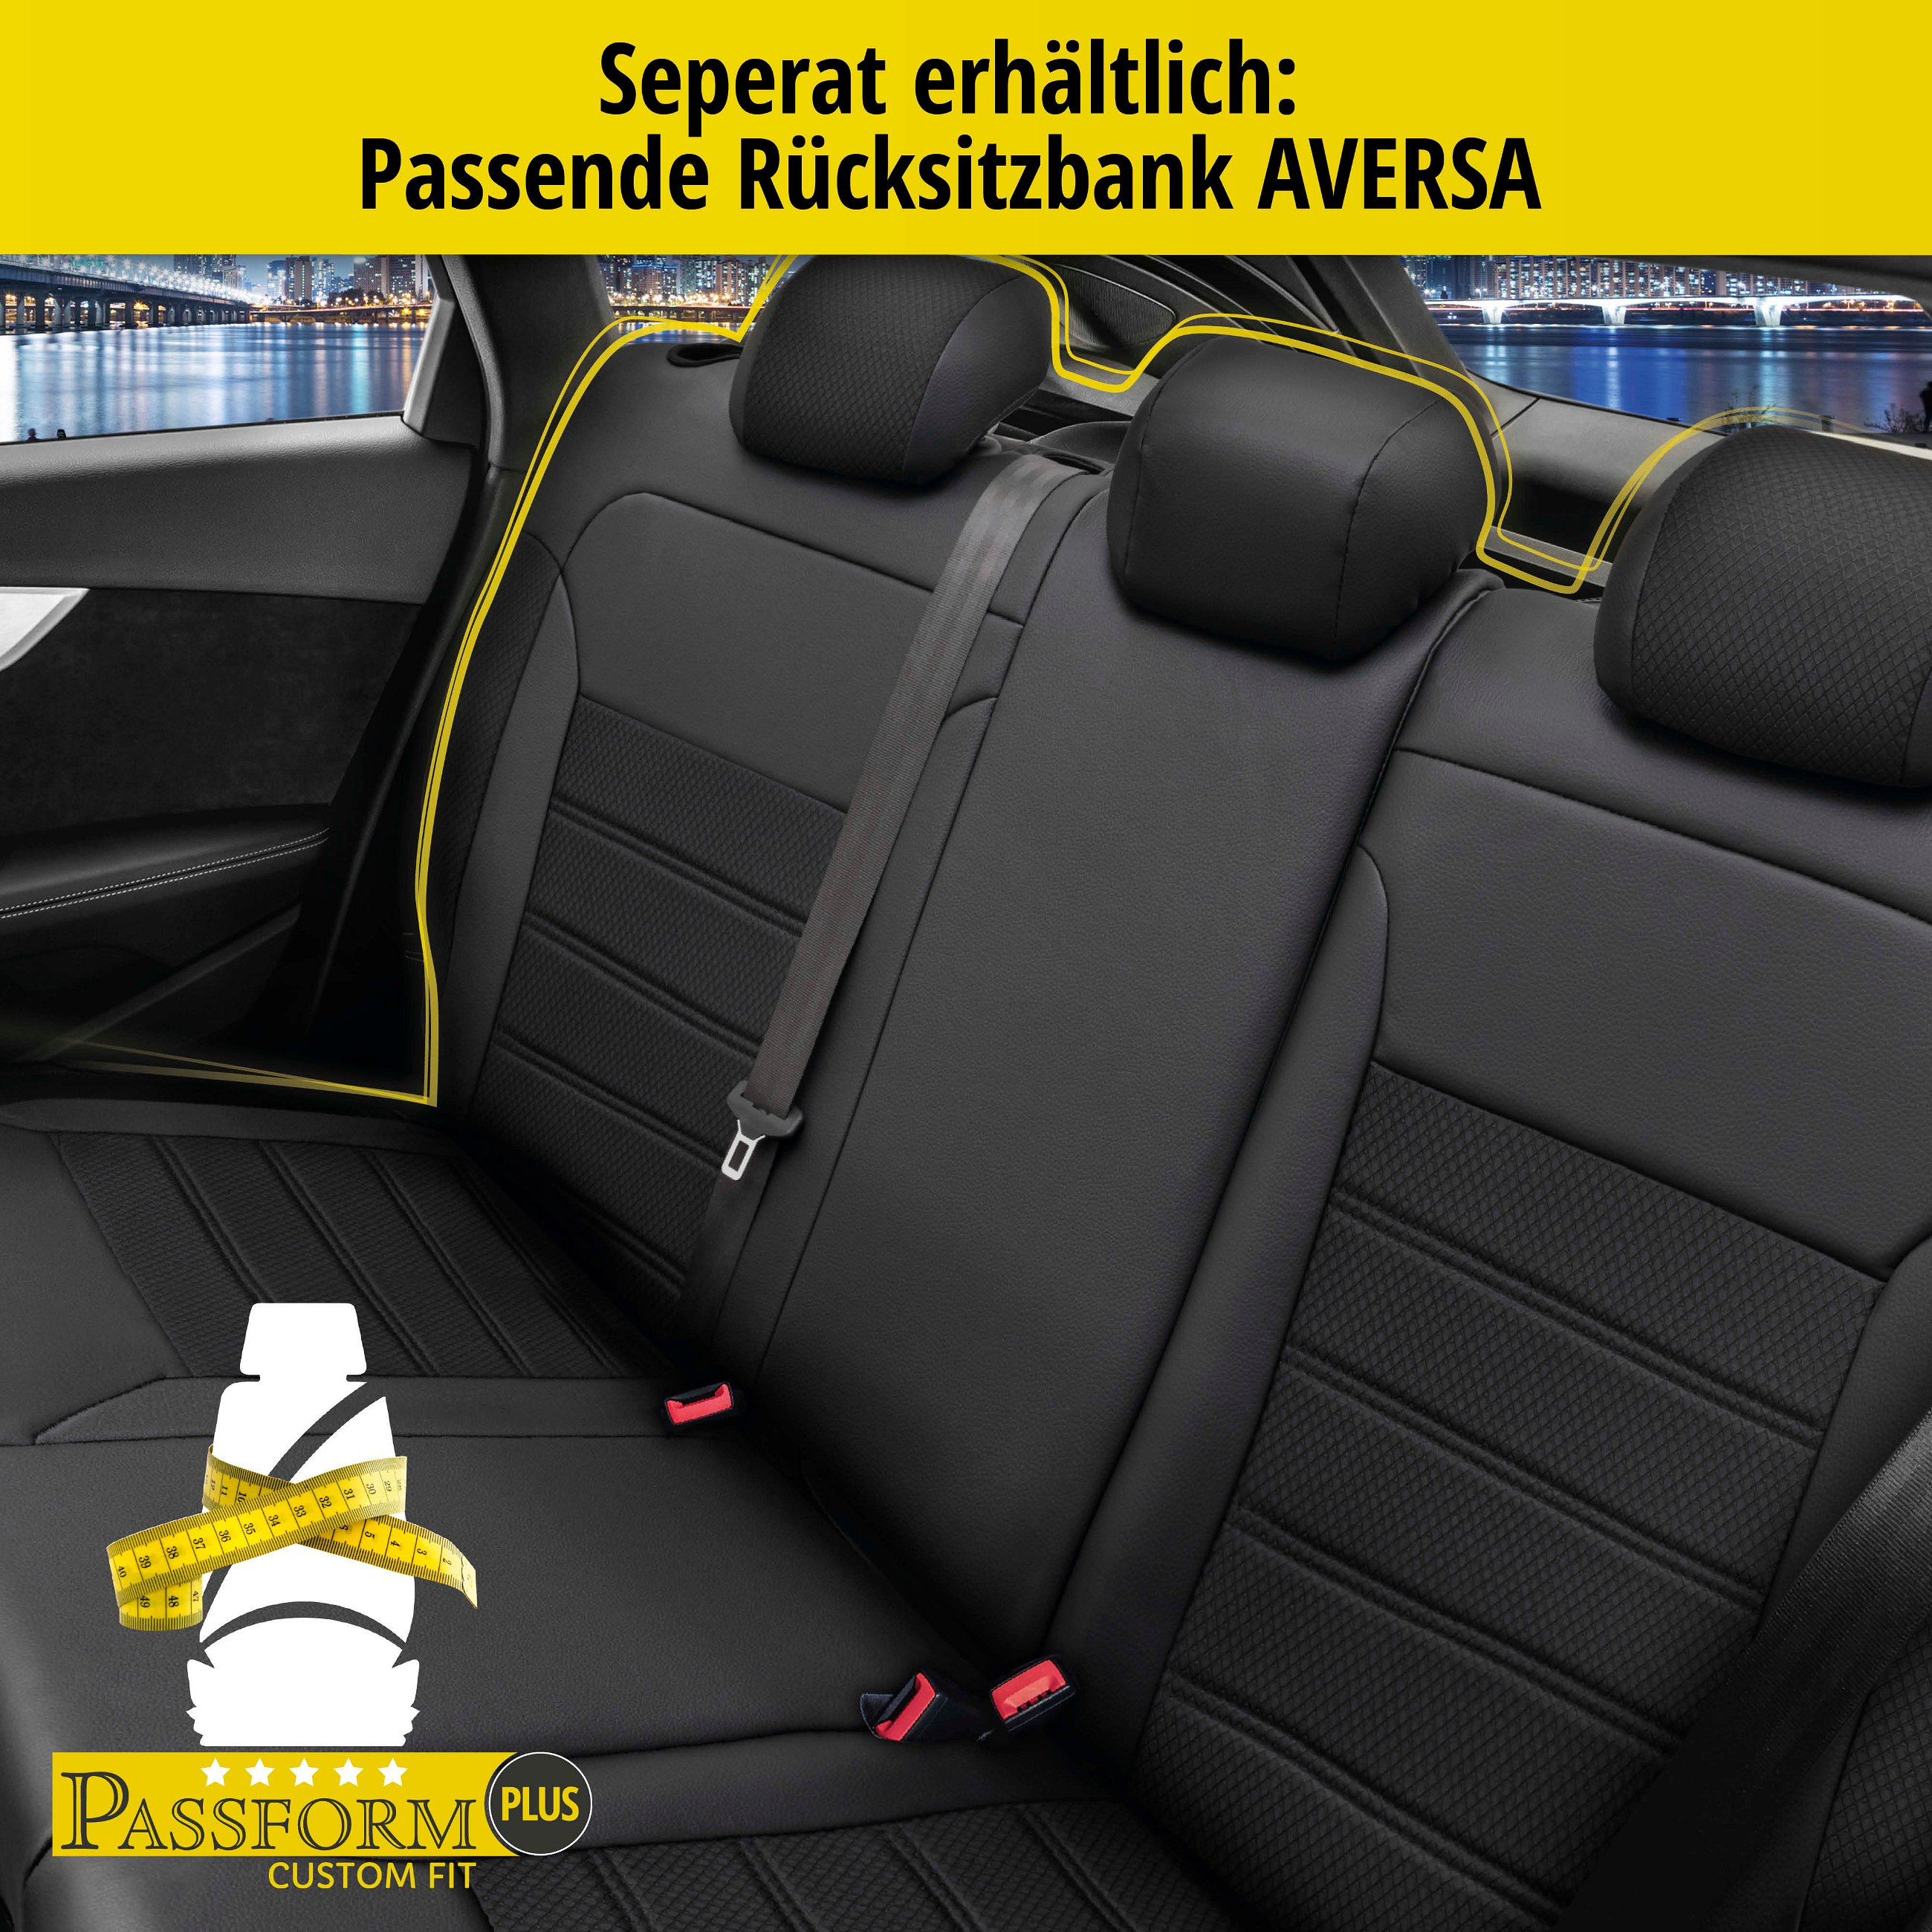 Passform Sitzbezug Aversa für Skoda Roomster (5J7) 03/2006-05/2015, 2 Einzelsitzbezüge für Normalsitze